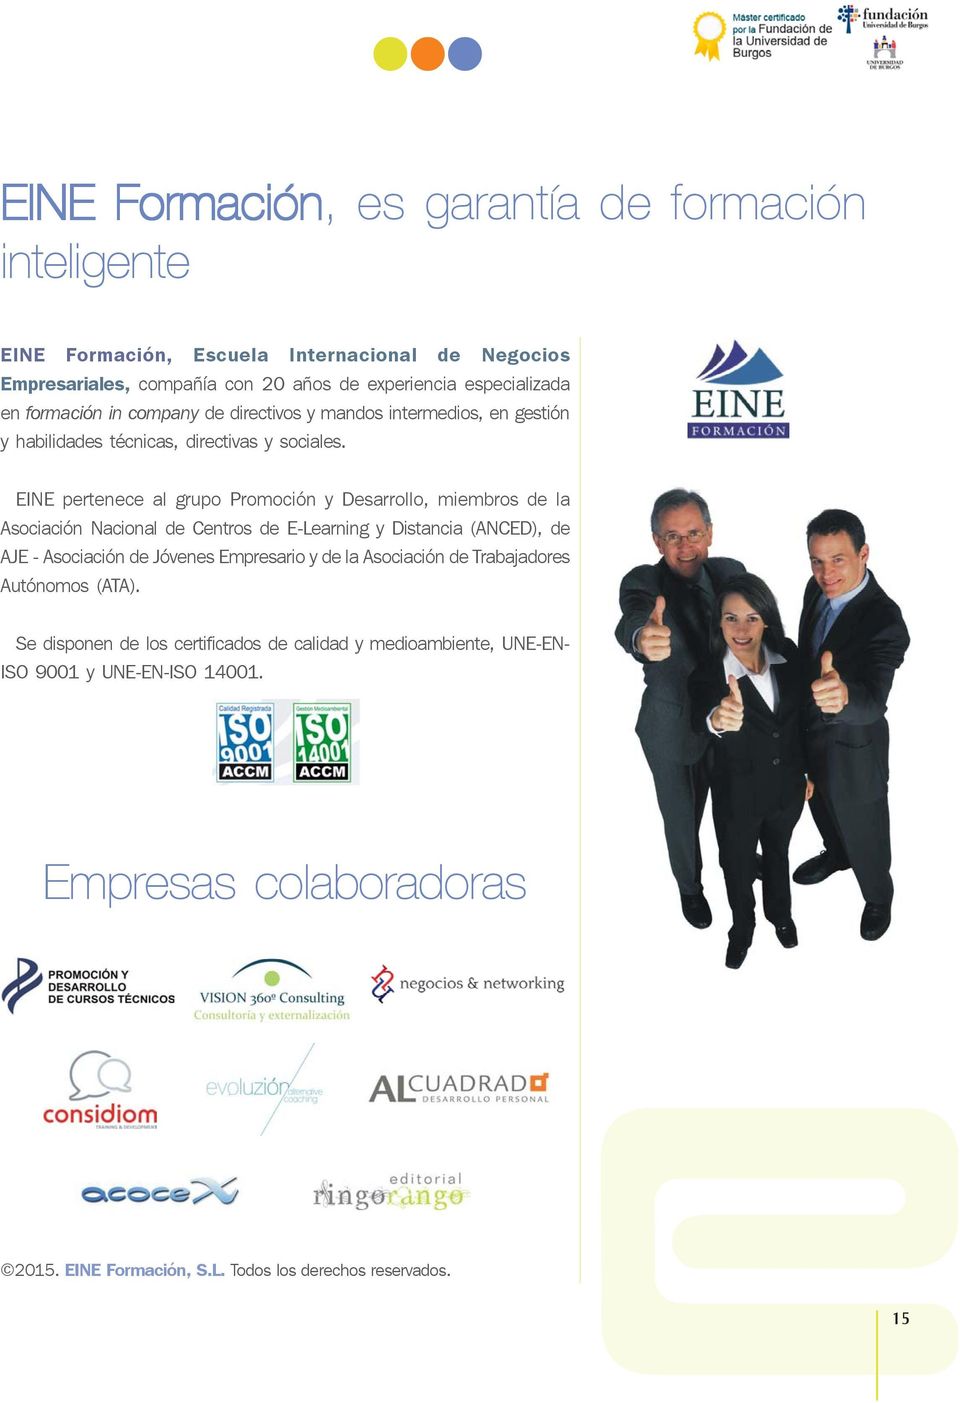 EINE pertenece al grupo Promoción y Desarrollo, miembros de la Asociación Nacional de Centros de E-Learning y Distancia (ANCED), de AJE - Asociación de Jóvenes Empresario y